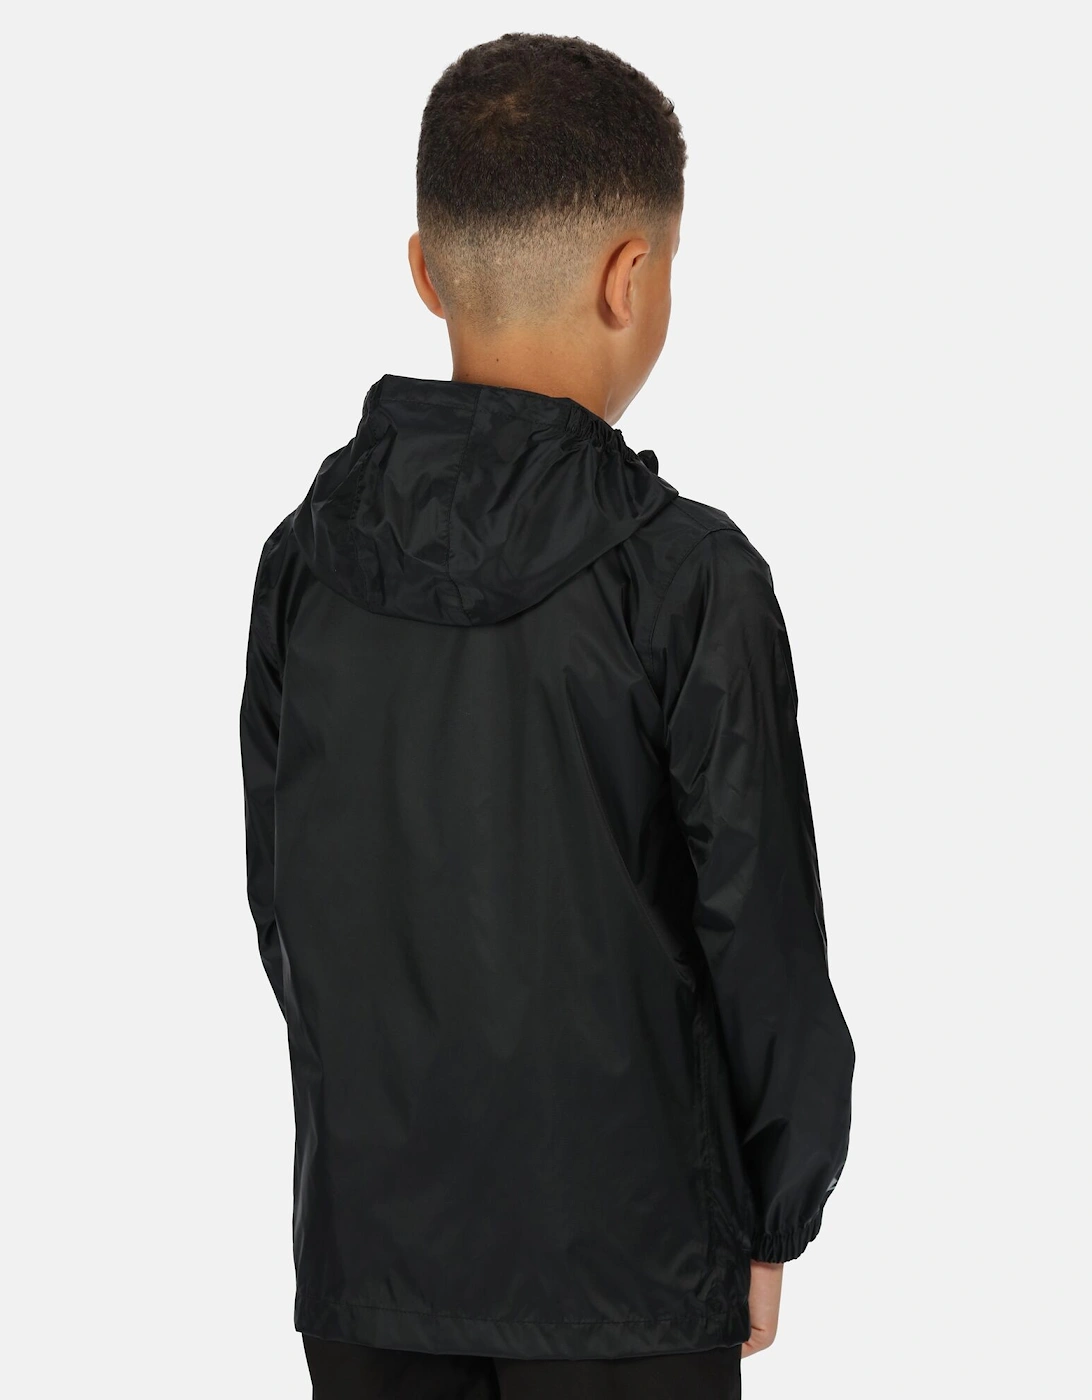 Great Outdoors Childrens/Kids Pack It Jacket III Waterproof Packaway Black